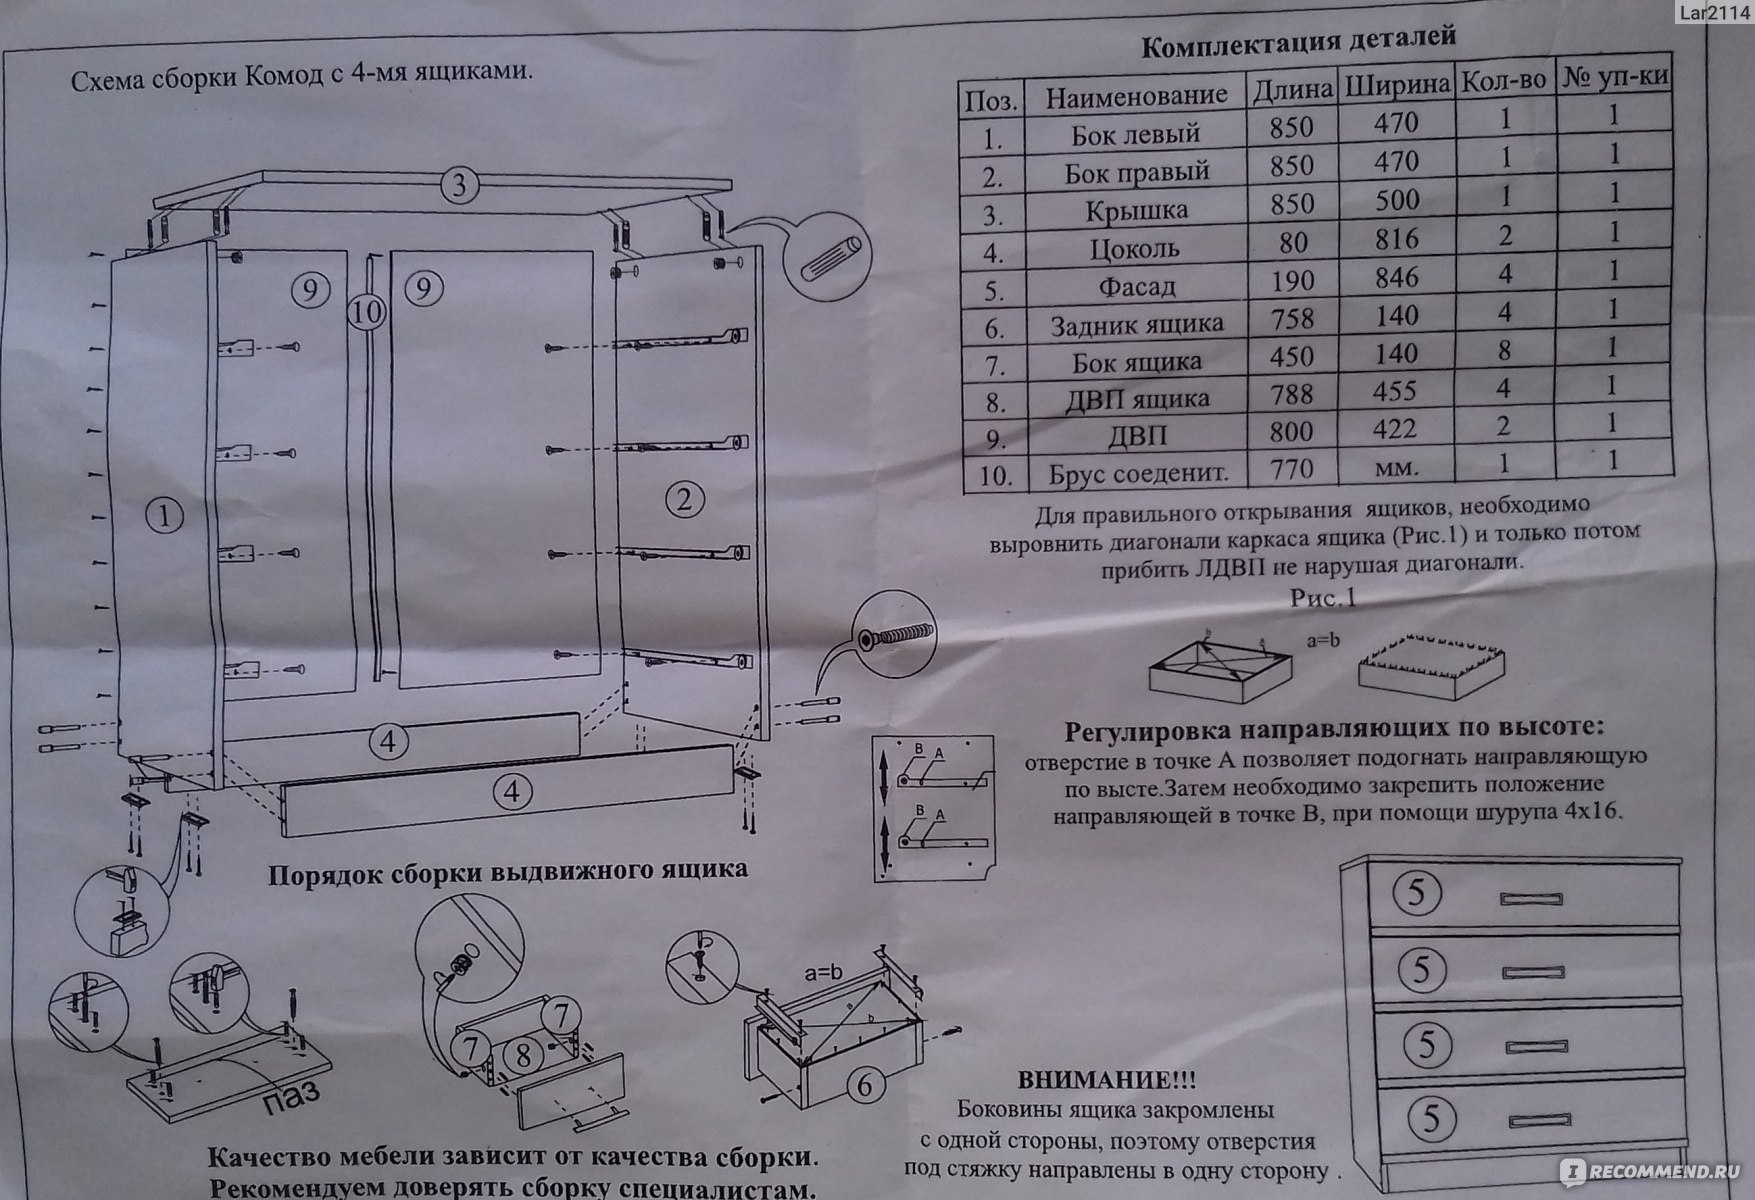 Инструкция по сборке комода с 3 ящиками